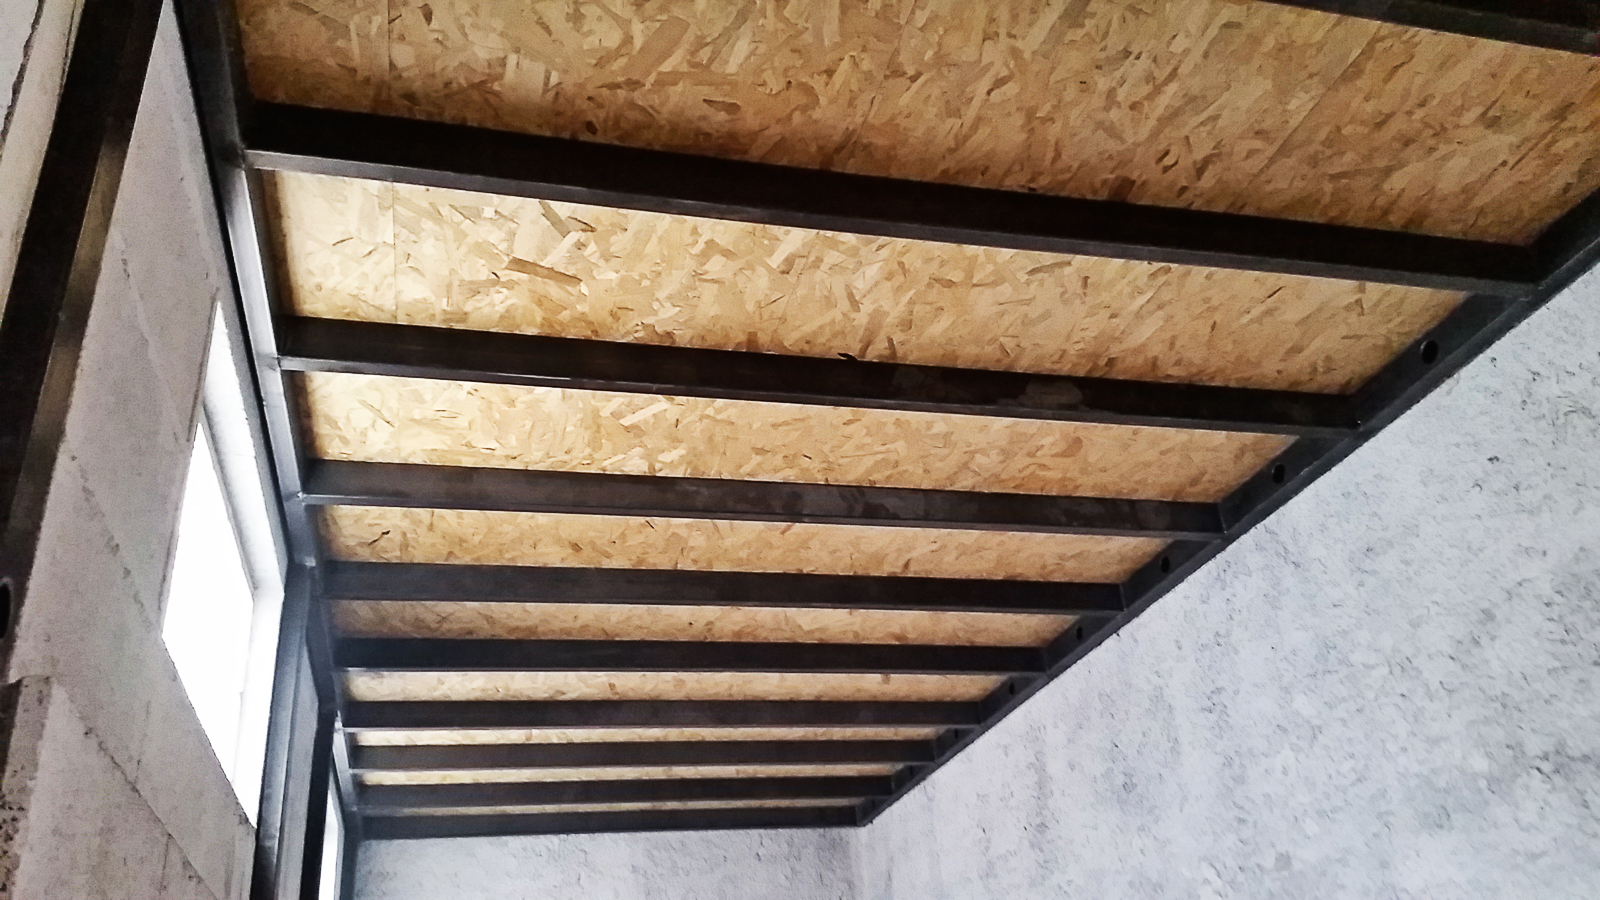 Visionnez notre réalisation sur-mesure d'une mezzanine en bois et métal, fruit de notre savoir-faire en métallerie. Ce projet a été conçu pour une habitation située à Lyon ou dans une commune avoisinante du département du Rhône.